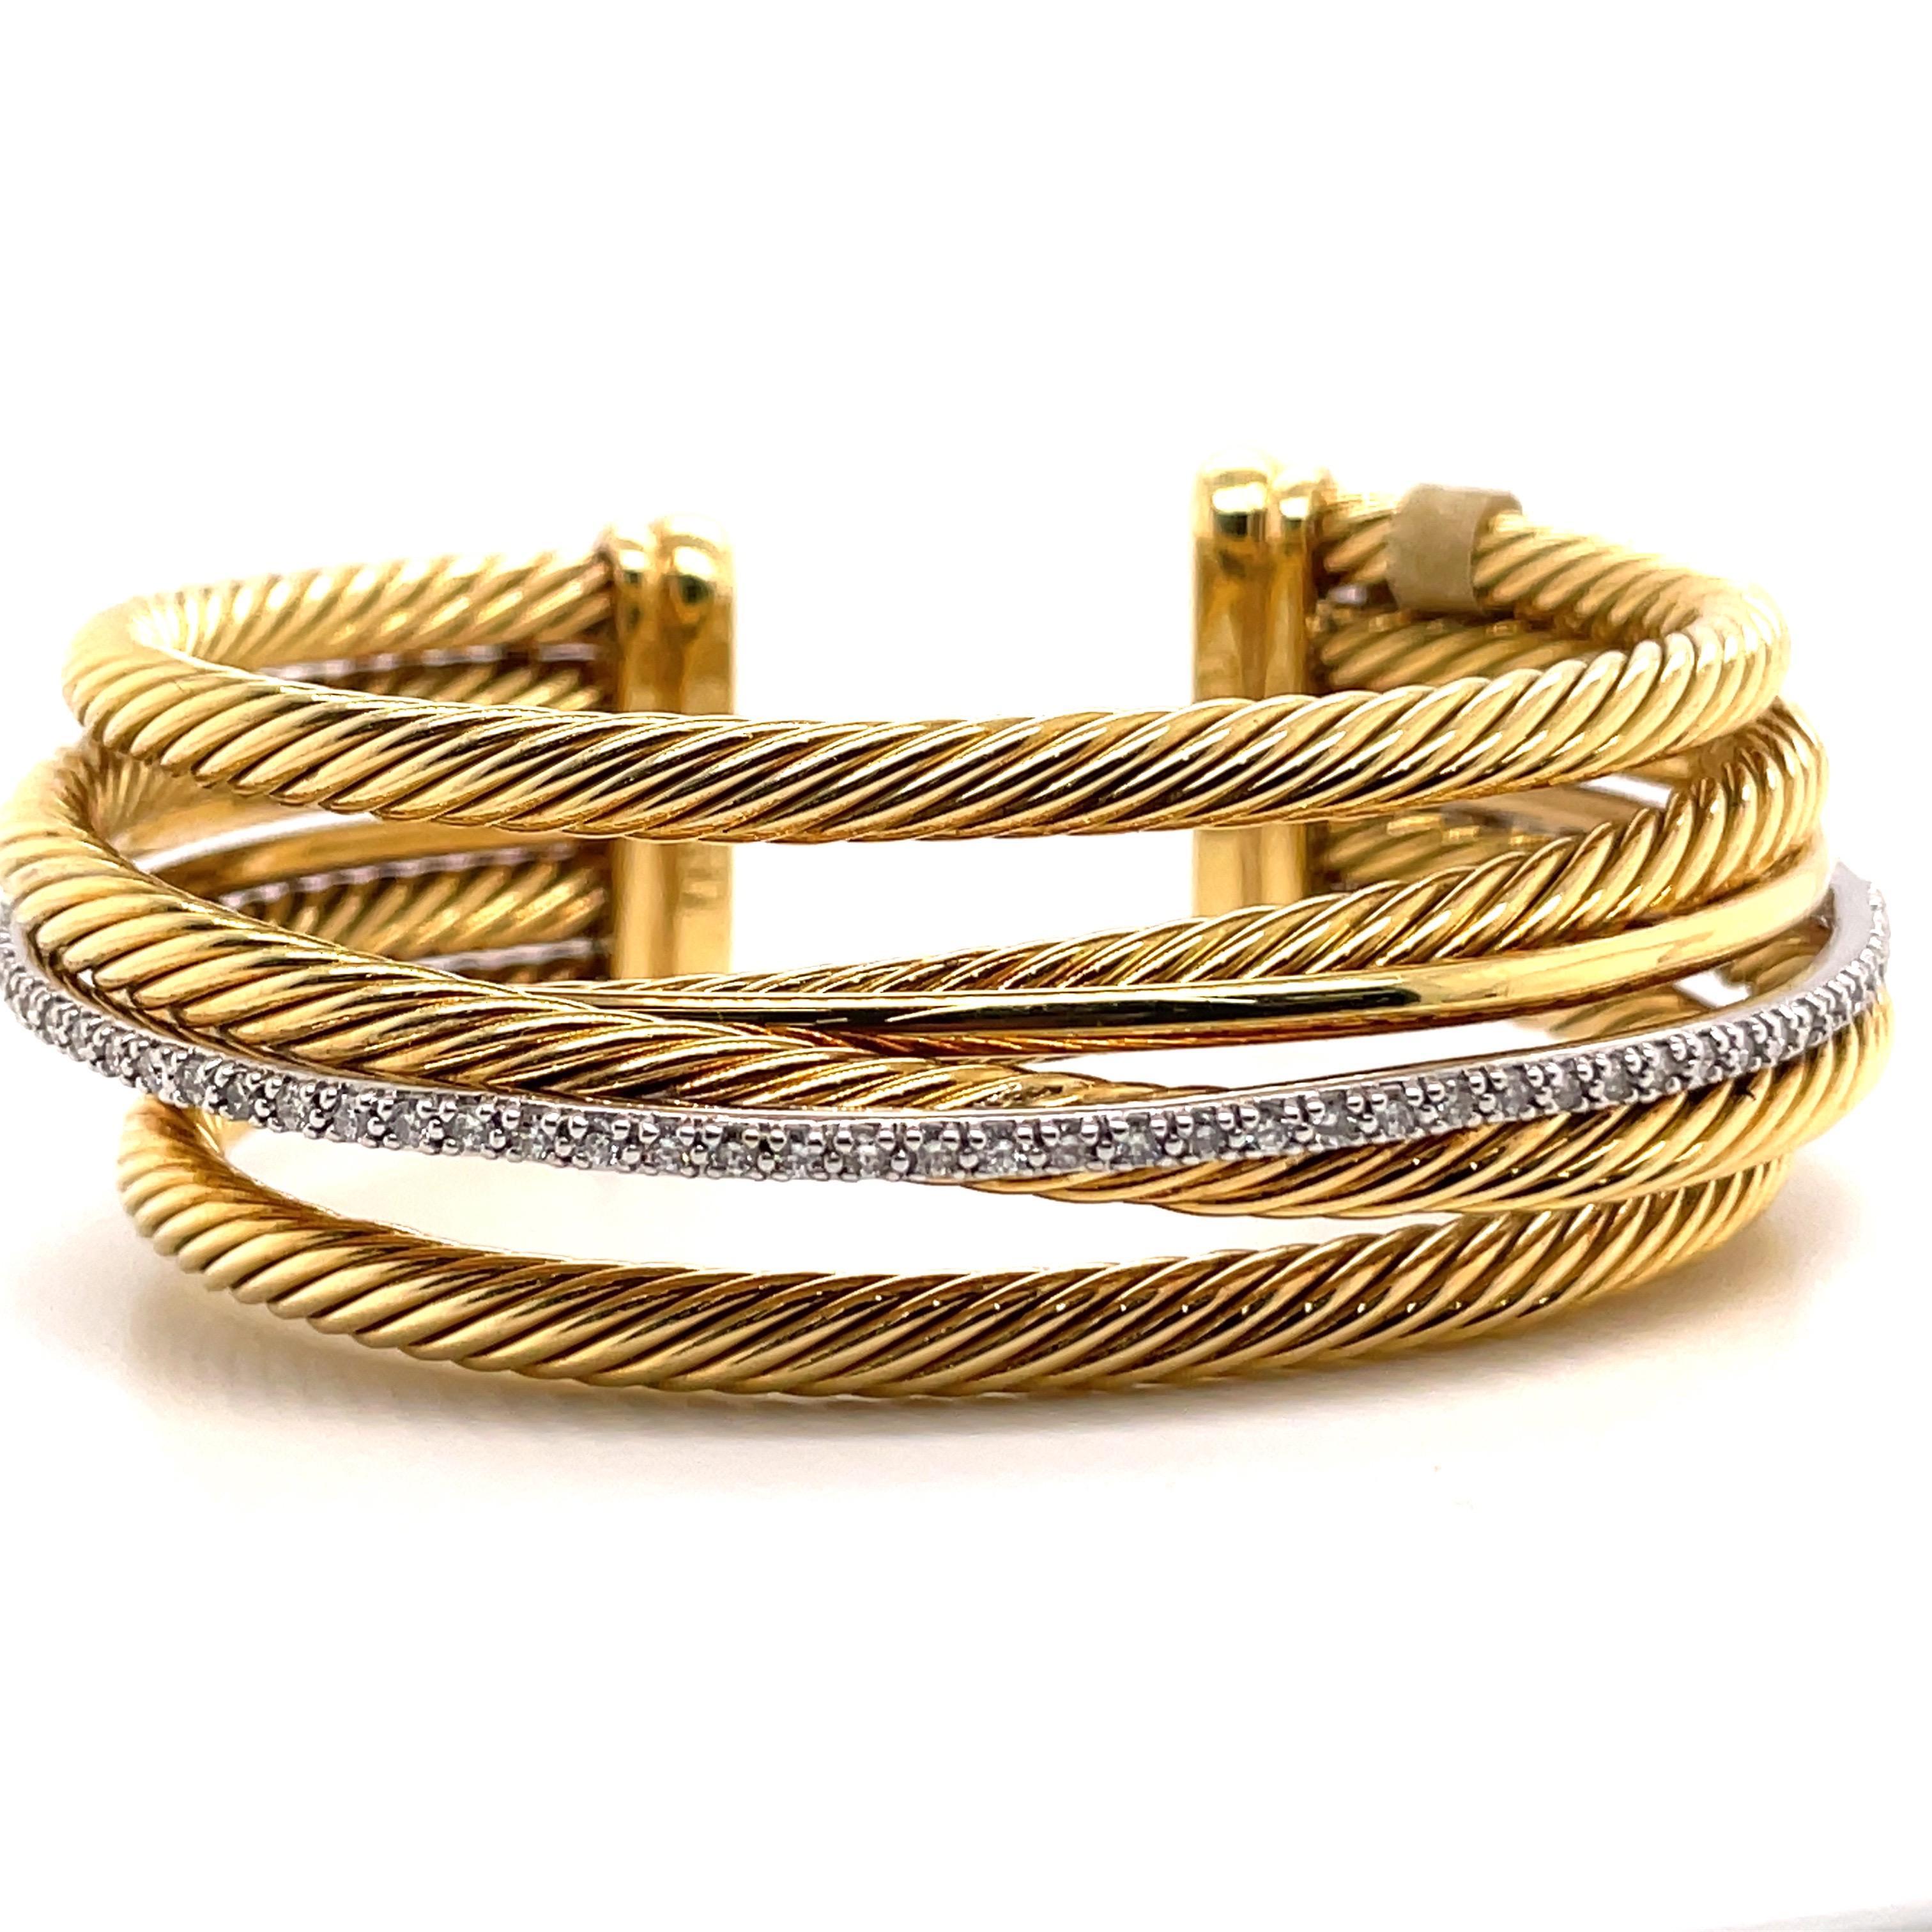 Dieses David Yurman-Armband aus der Crossover-Kollektion besteht aus 4 überkreuzten Kordeln, einer polierten Kordel und einer Diamantreihe aus 18 Karat Gelbgold. 
81.7 Gramm